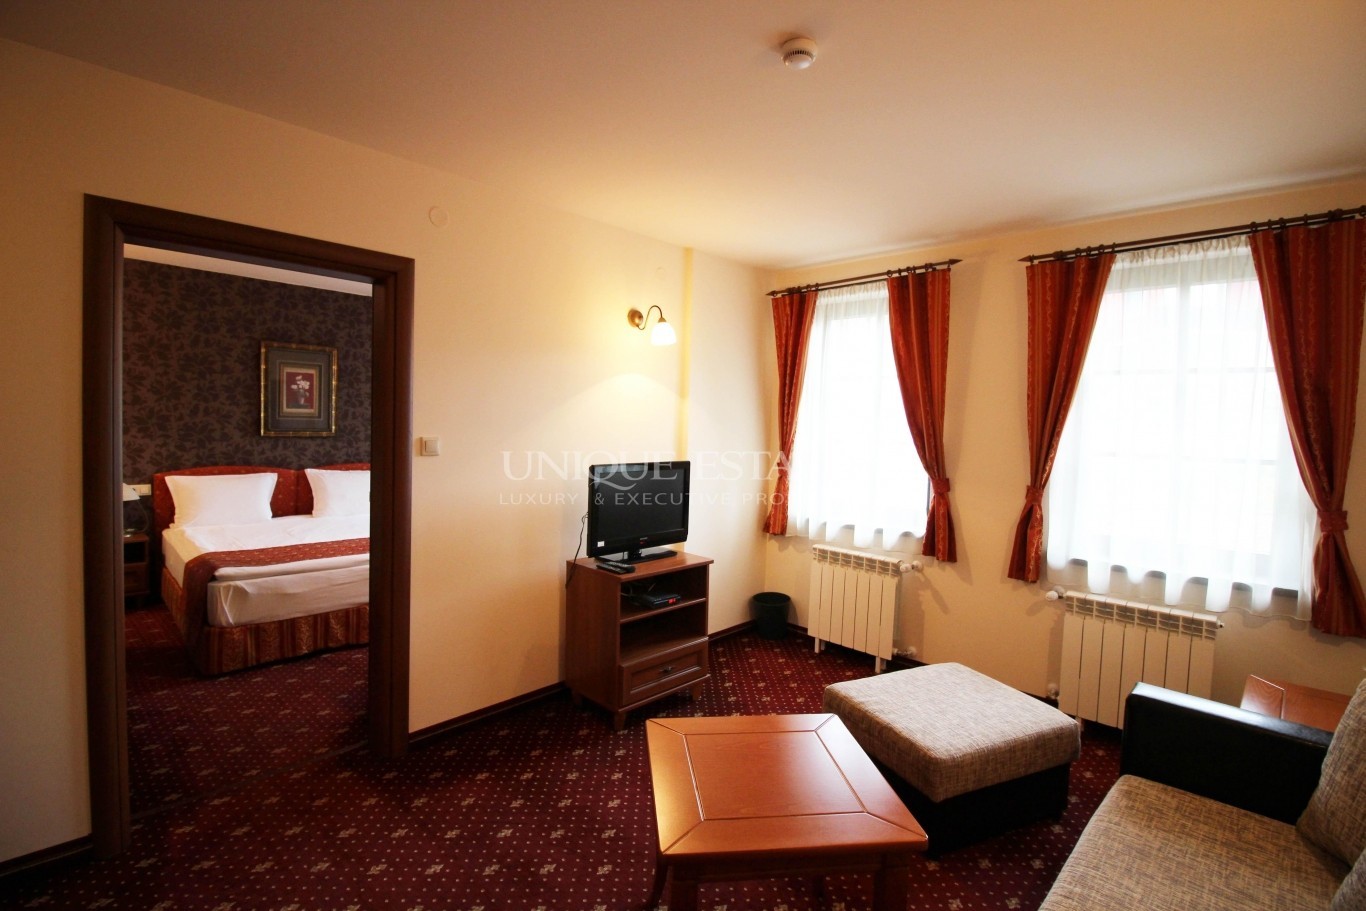 Хотел / Apartment house за продажба в Копривщица,  - код на имота: K7408 - image 11